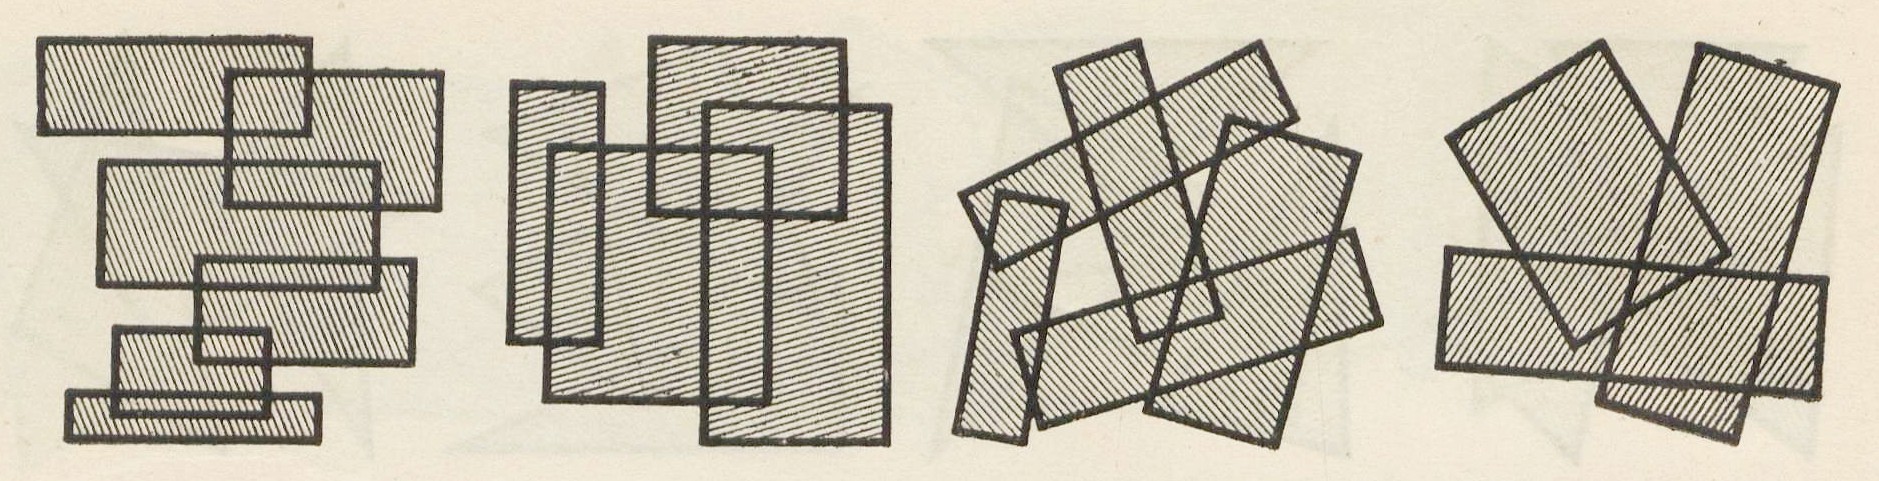 10, 11, 12, 13 Плоскостные композиции из ряда прямоугольников